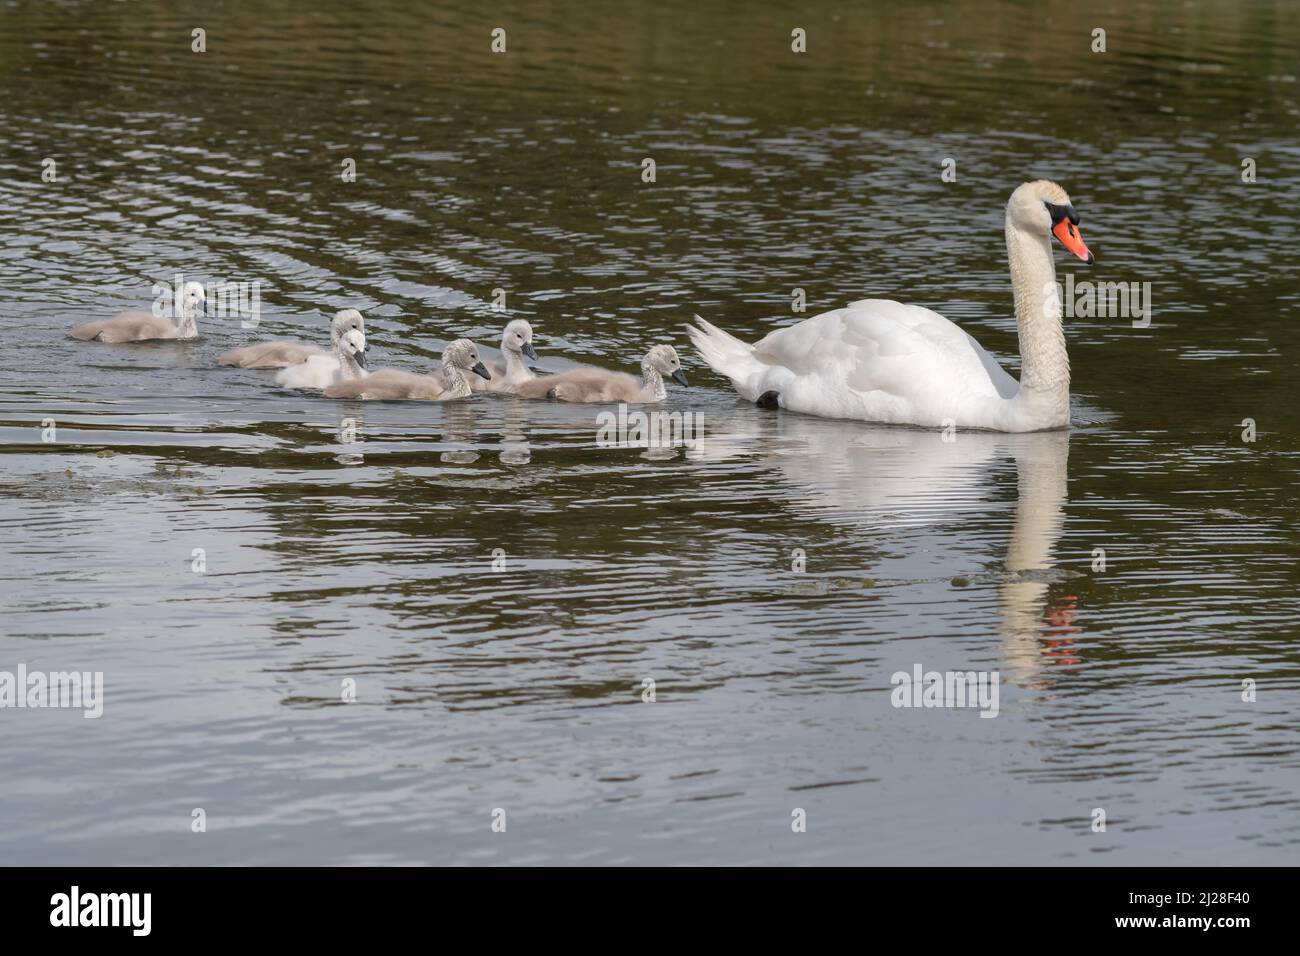 Cygne avec des bébés (cygnets) nageant dans un lac. Banque D'Images